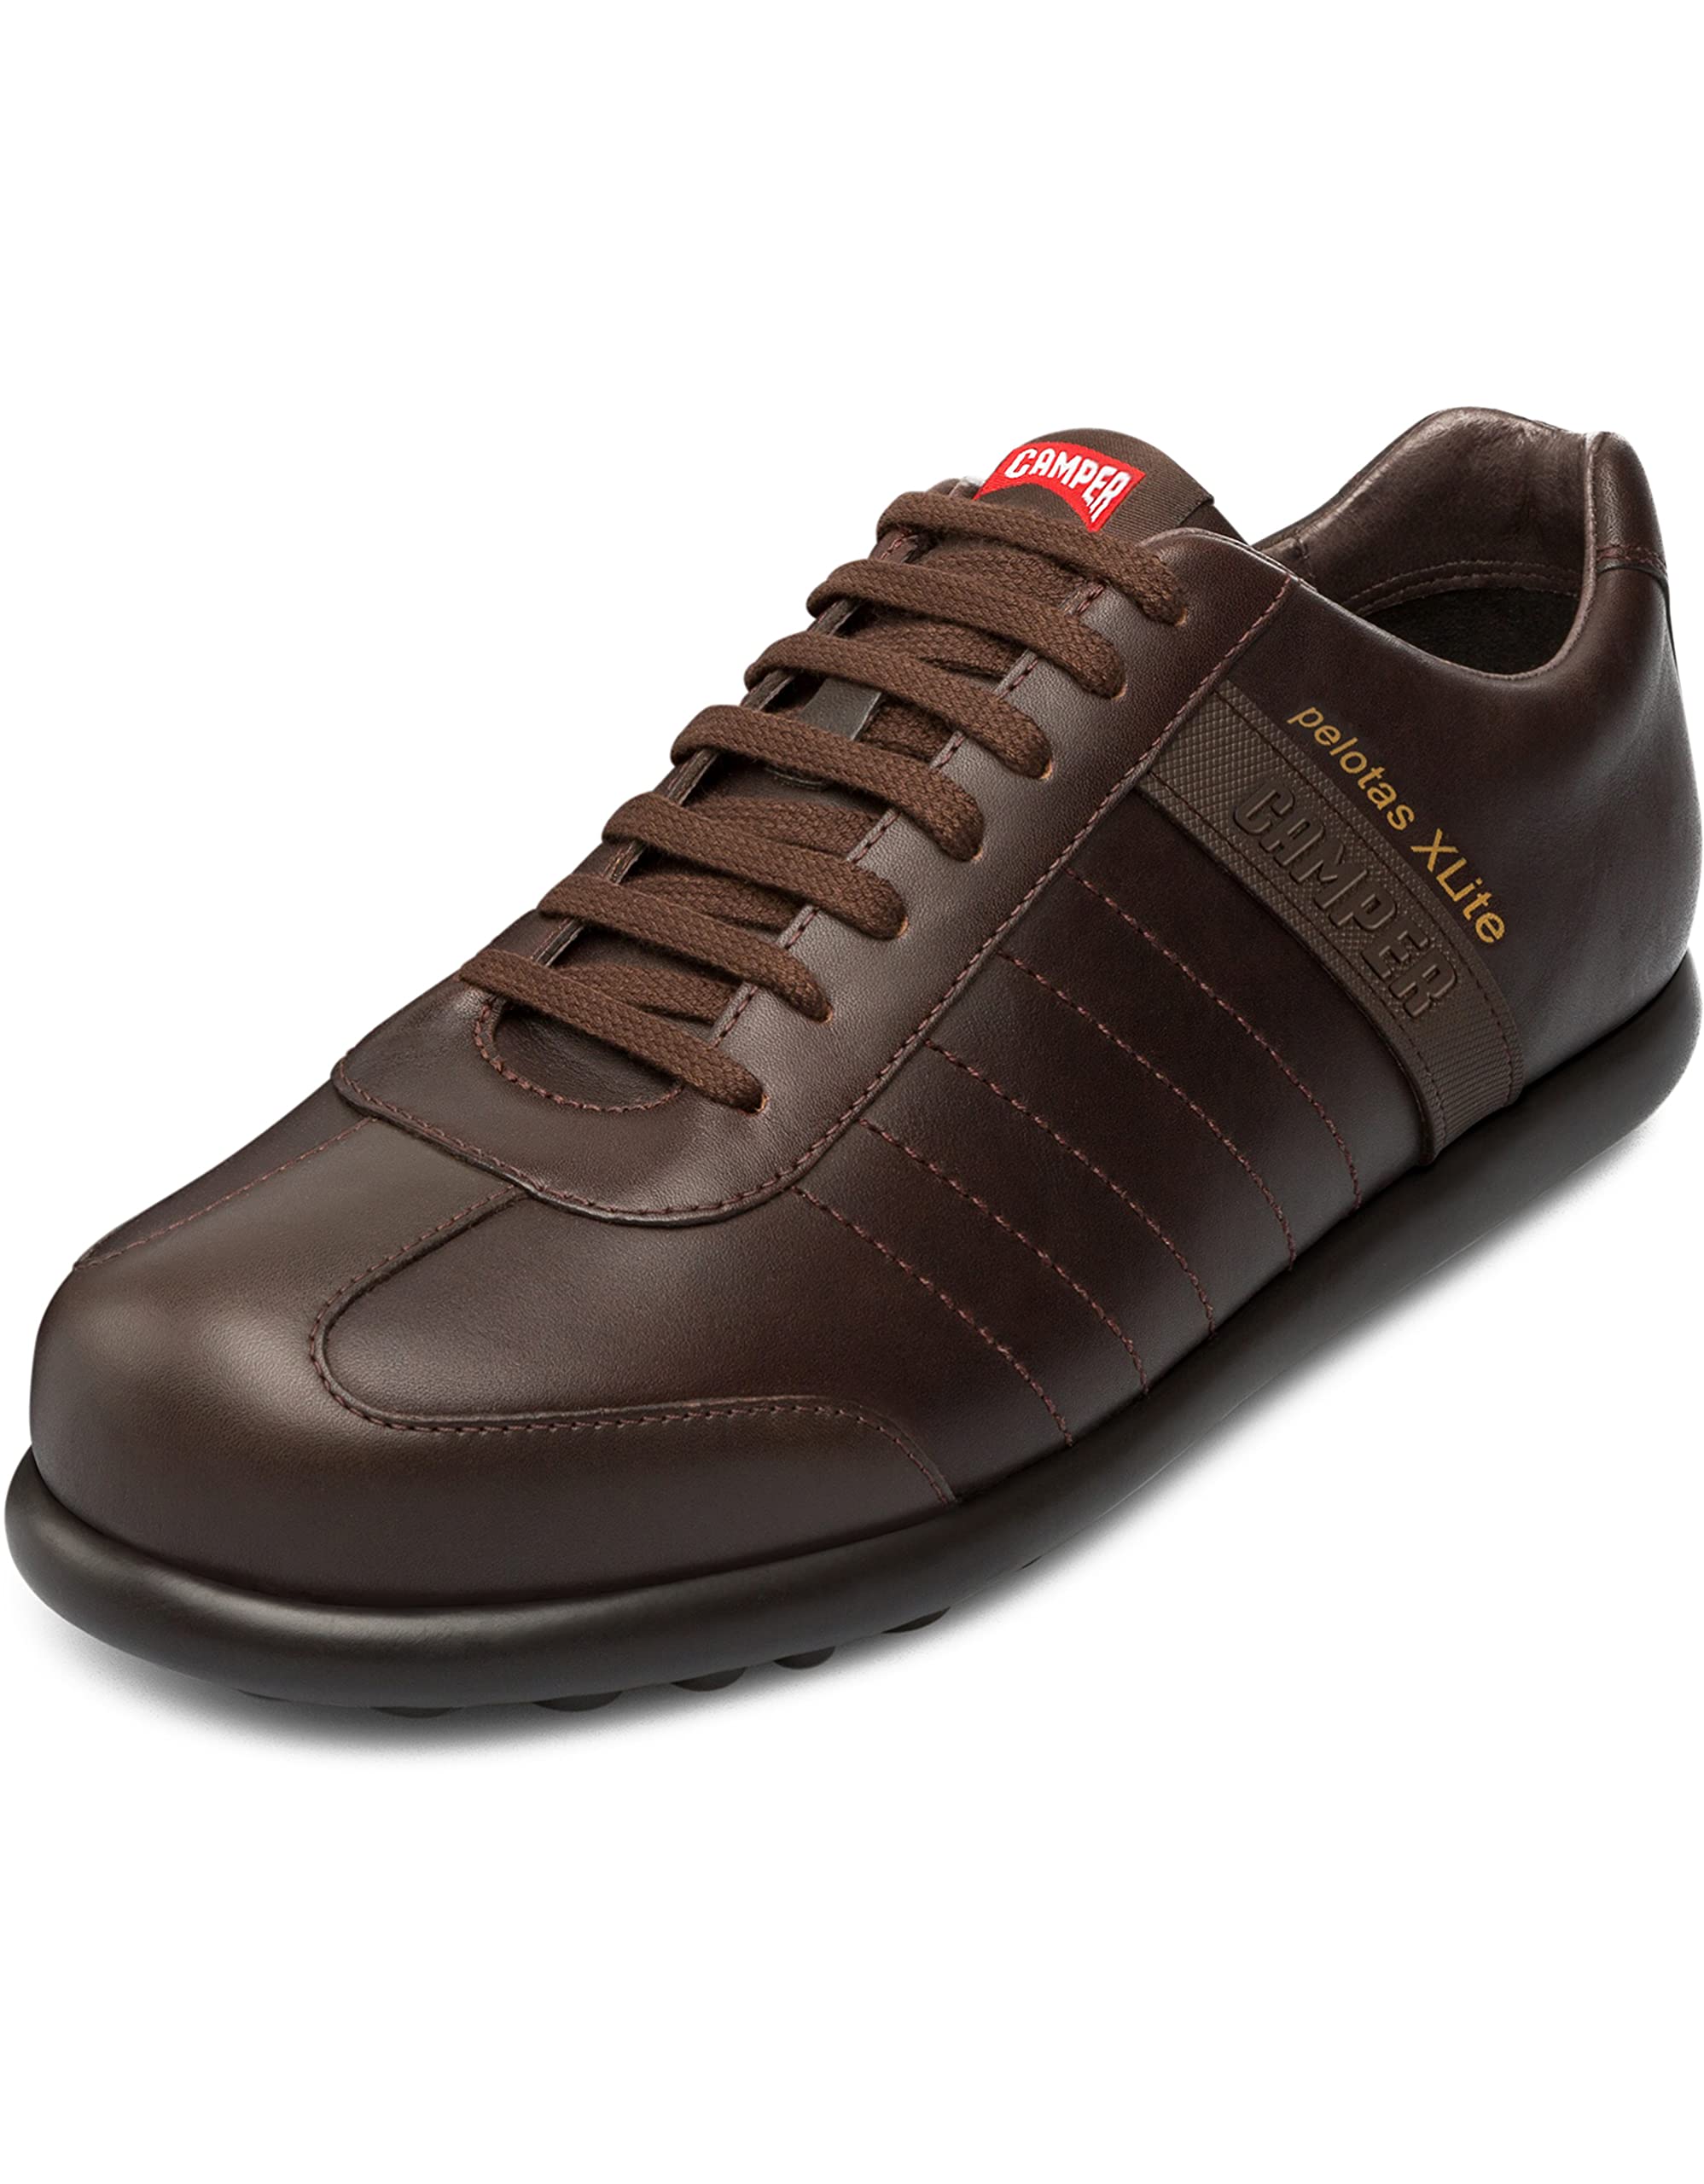 CAMPER, Pelotas XL, Herren Sneakers, Braun (Dark Brown), 42 EU (8 UK)